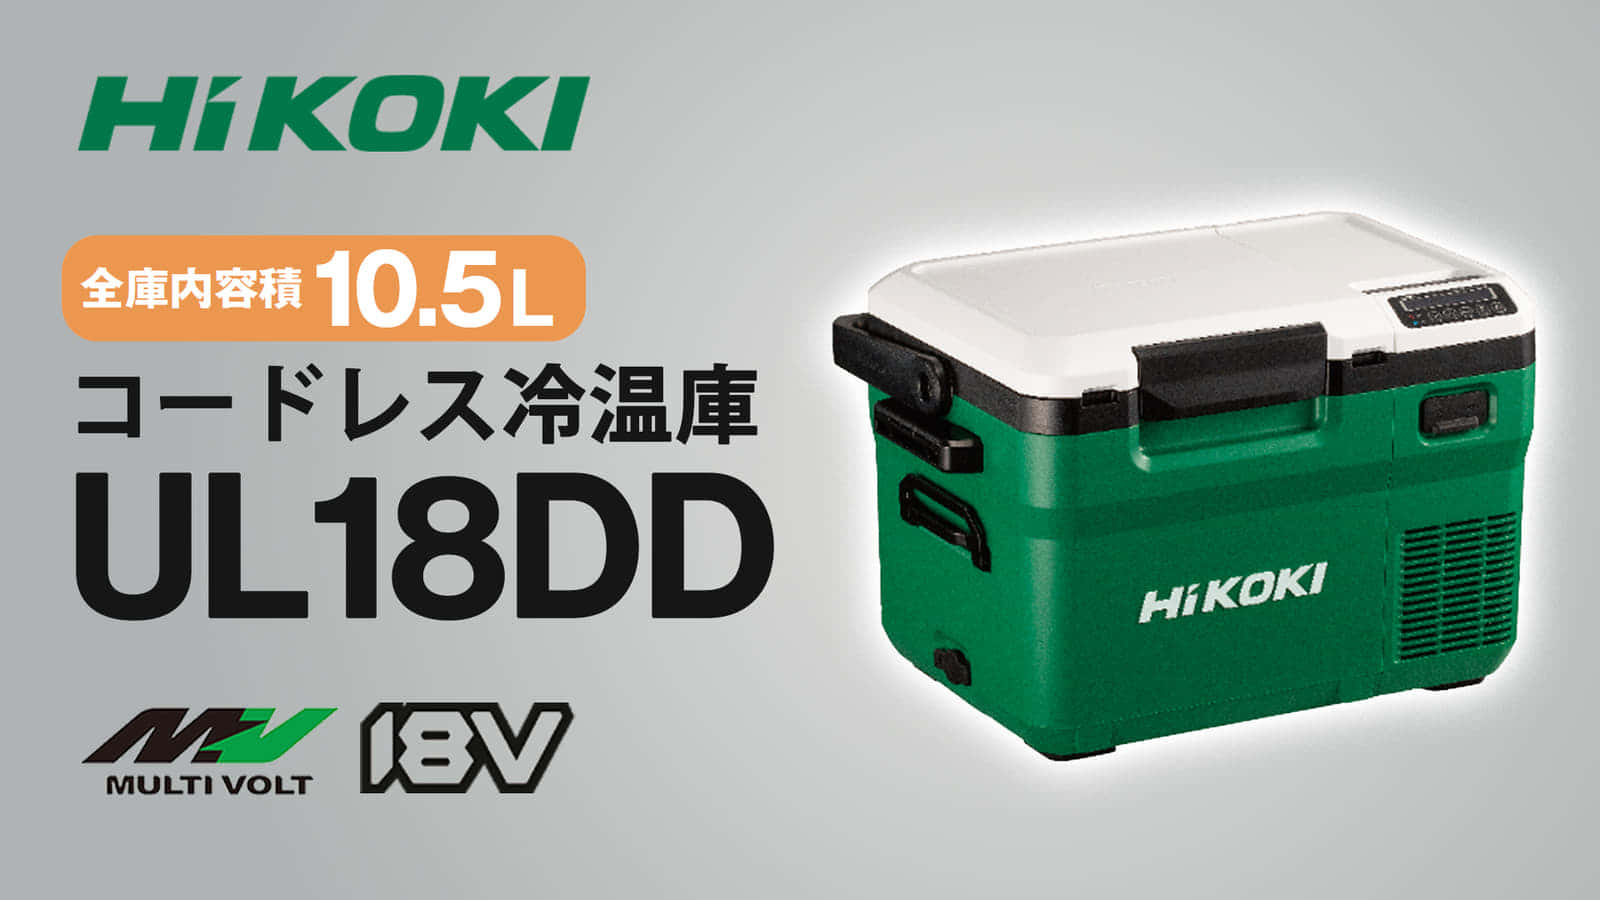 HIKOKI UL18DD コードレス冷温庫を発売、コンパクトサイズの10.5Lモデル